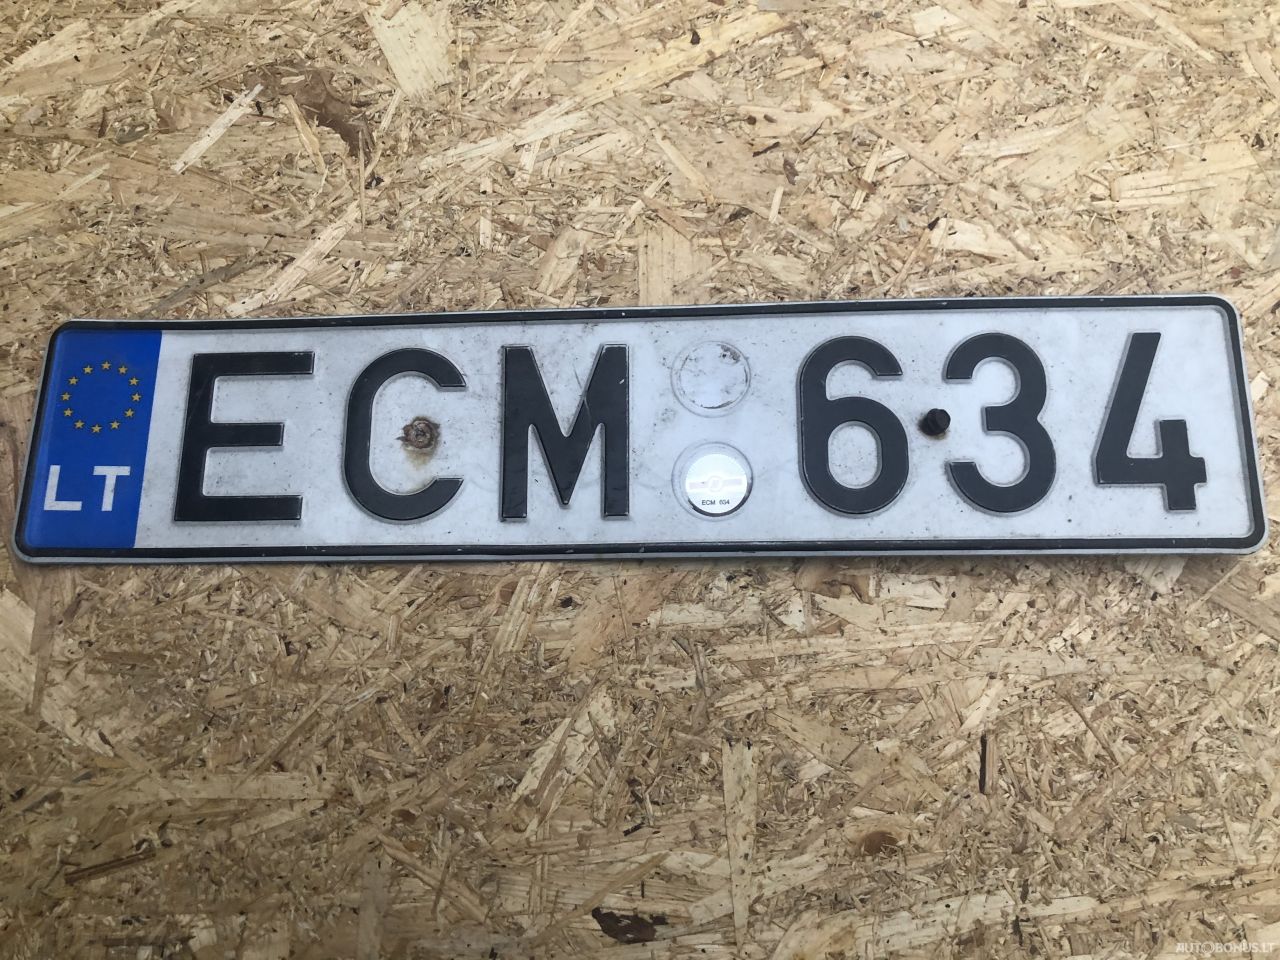  ECM634